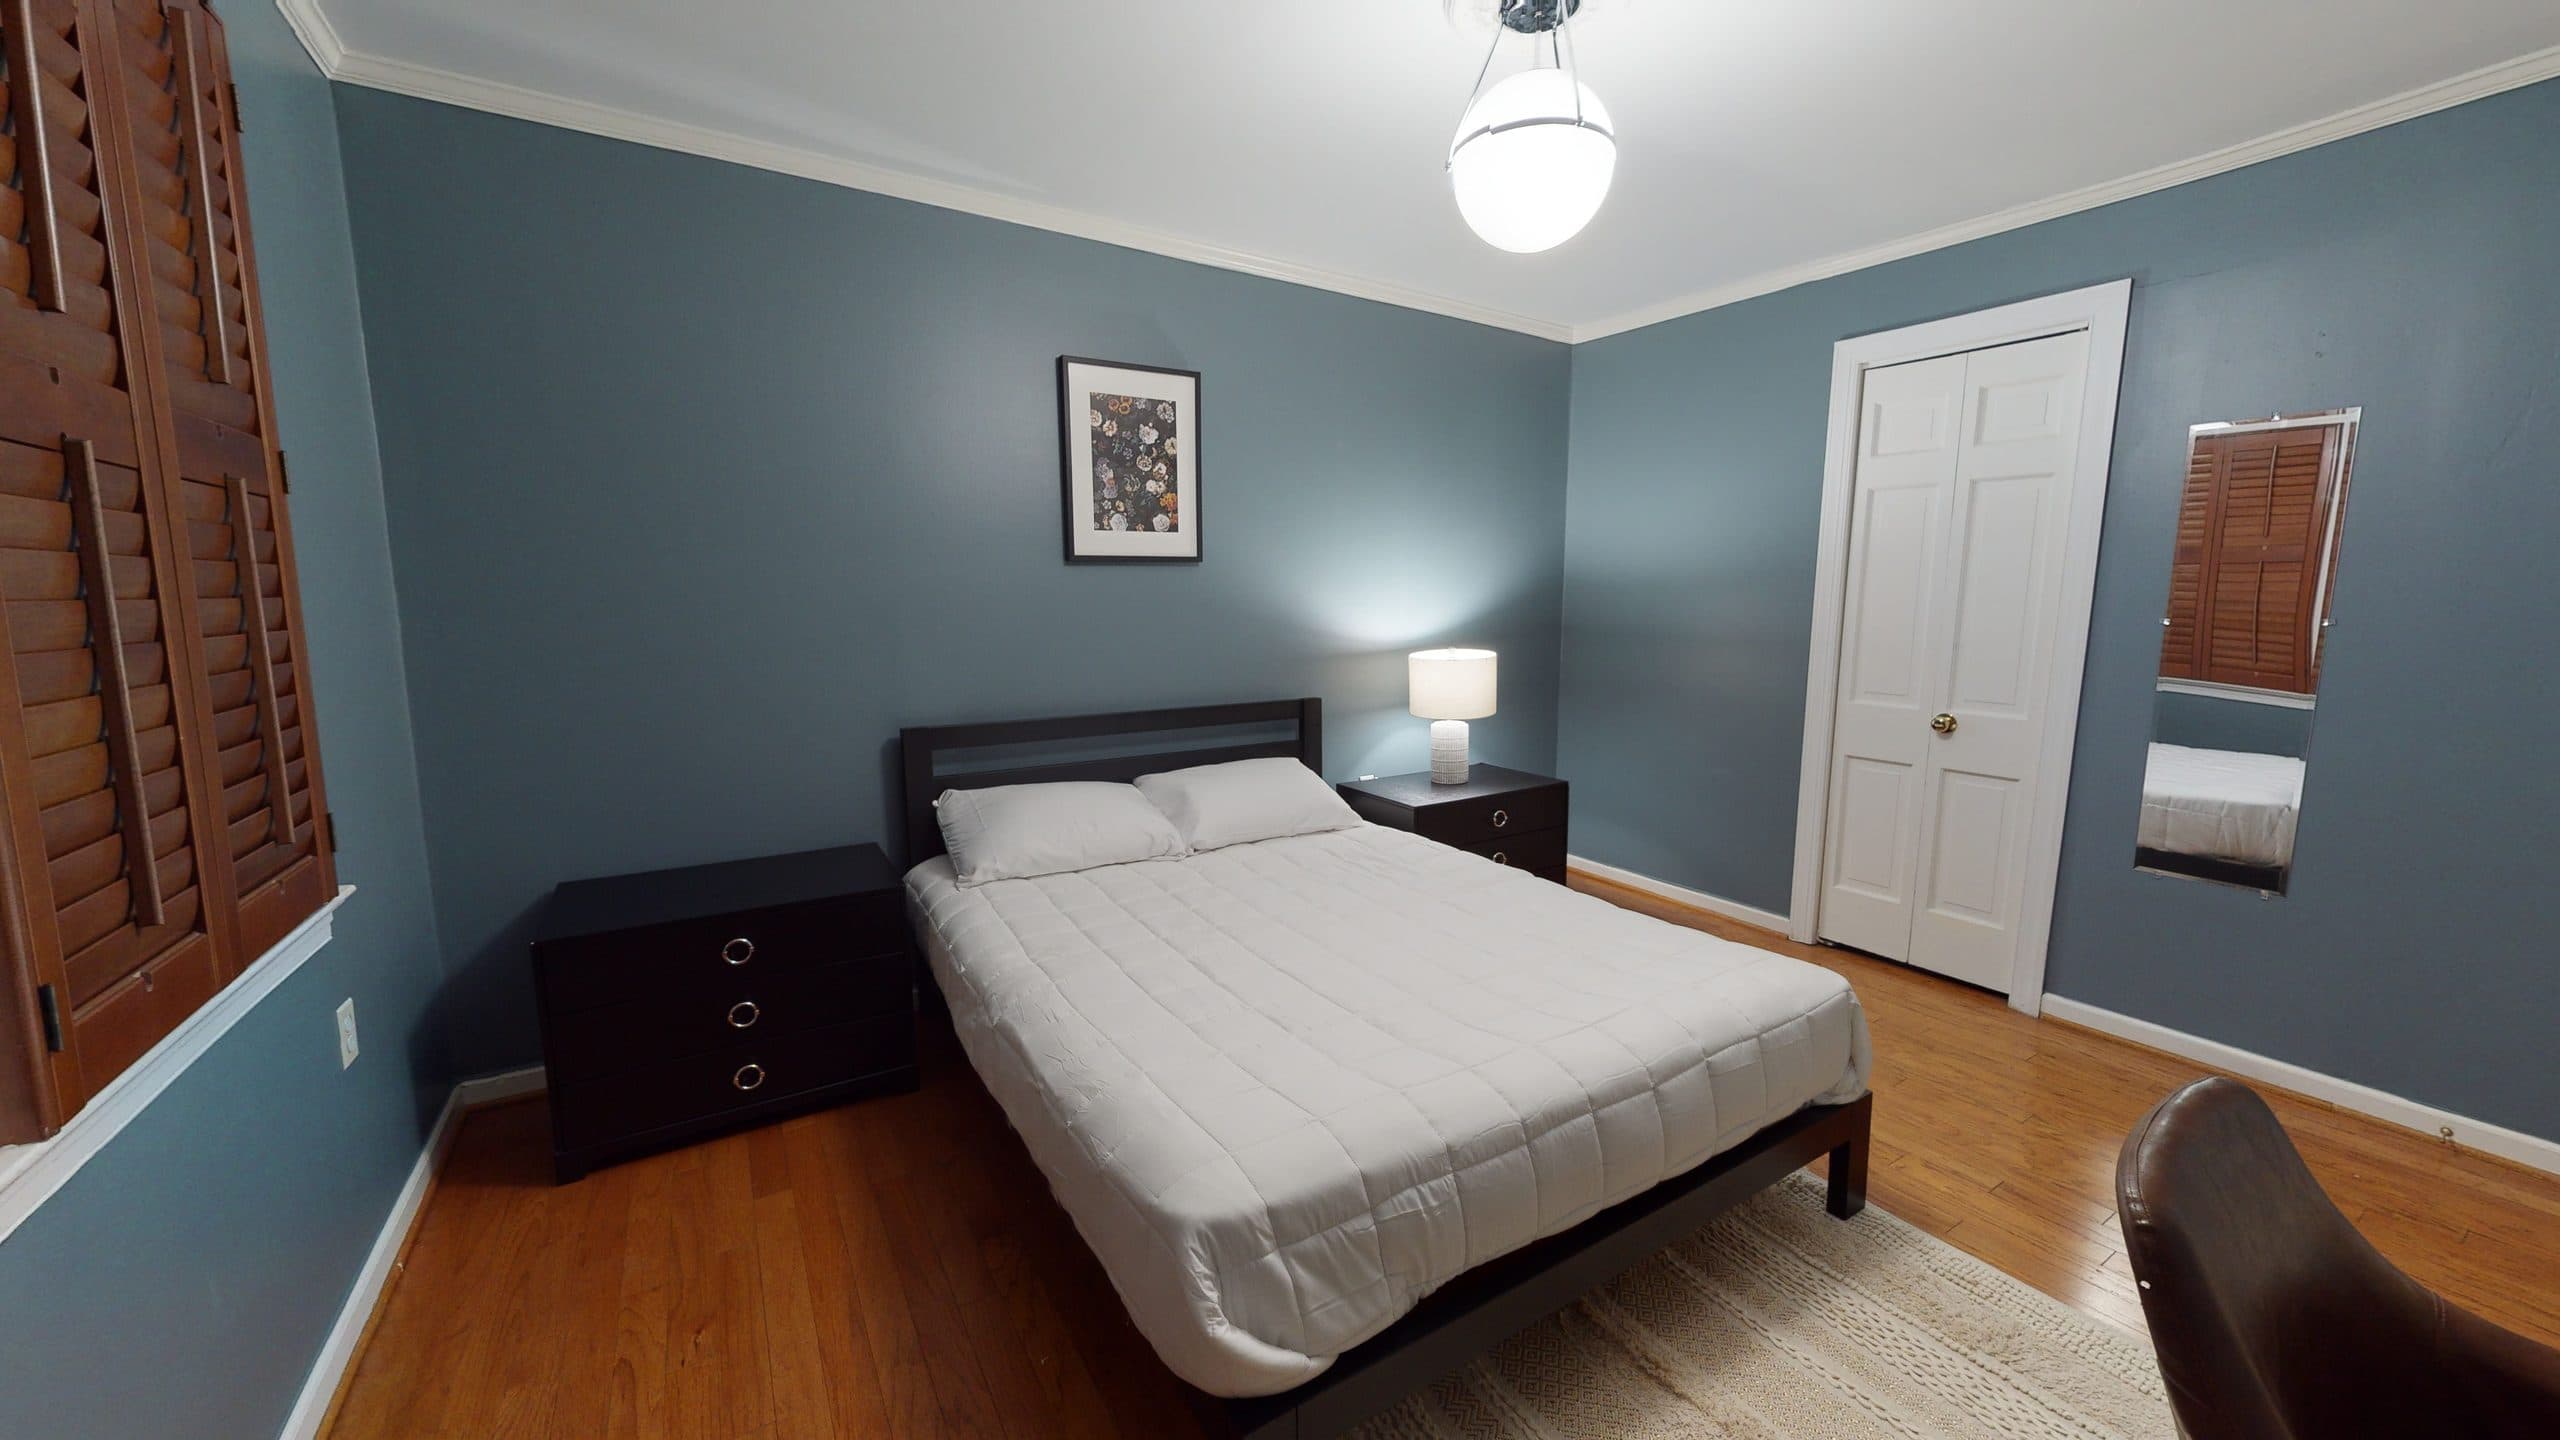 Photo 13 of #1427: Queen Bedroom 2D at June Homes